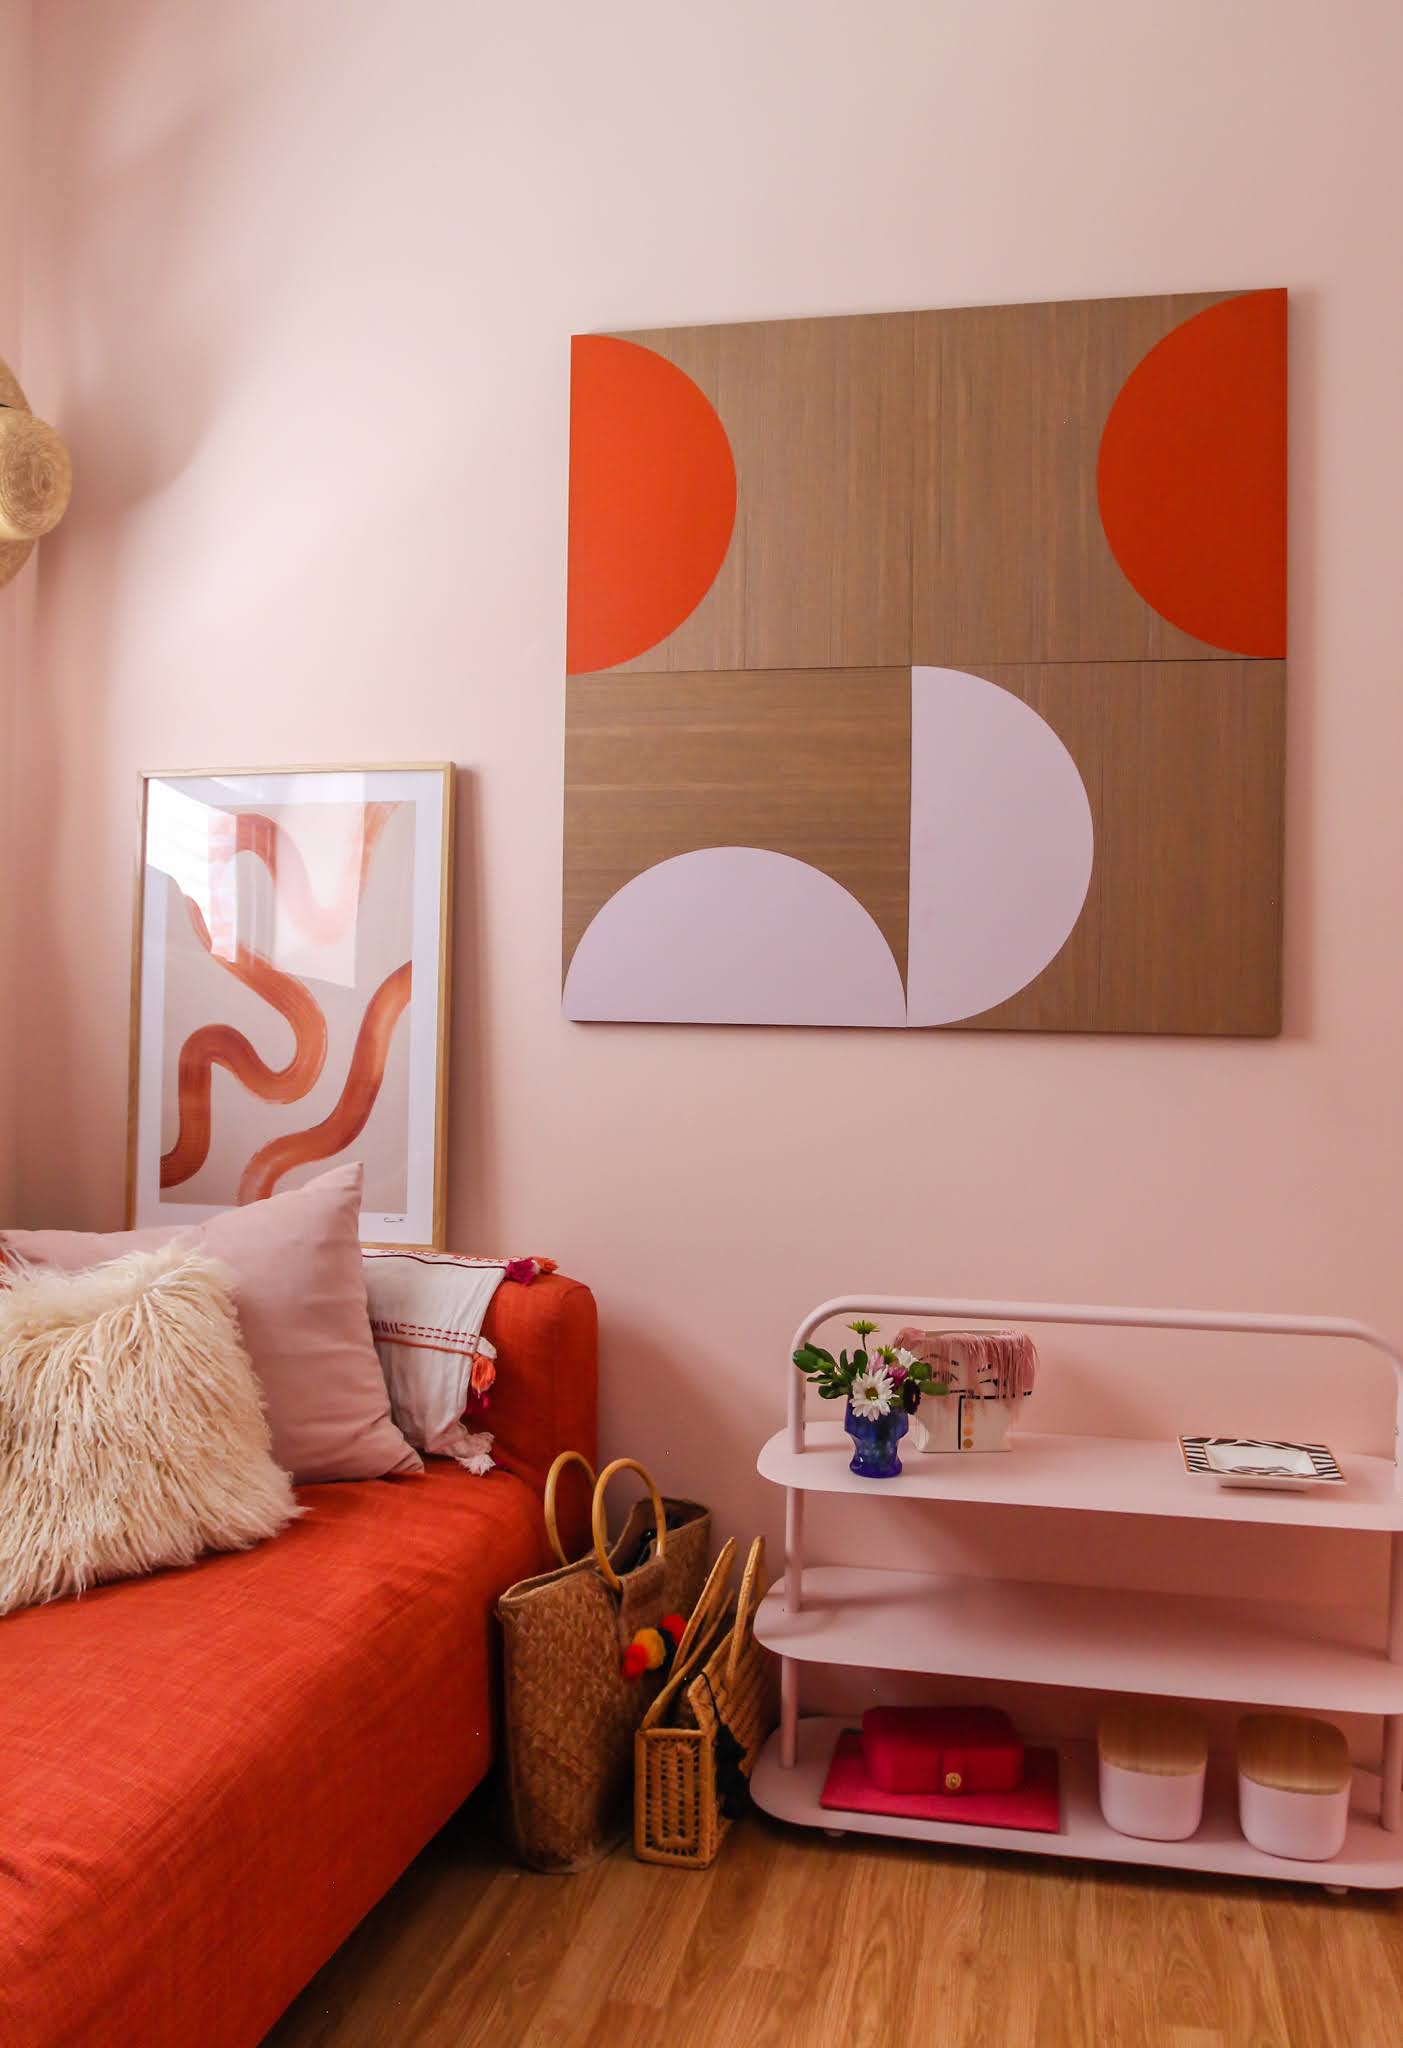 ترکیب رنگ نارنجی و صورتی در اتاق خواب